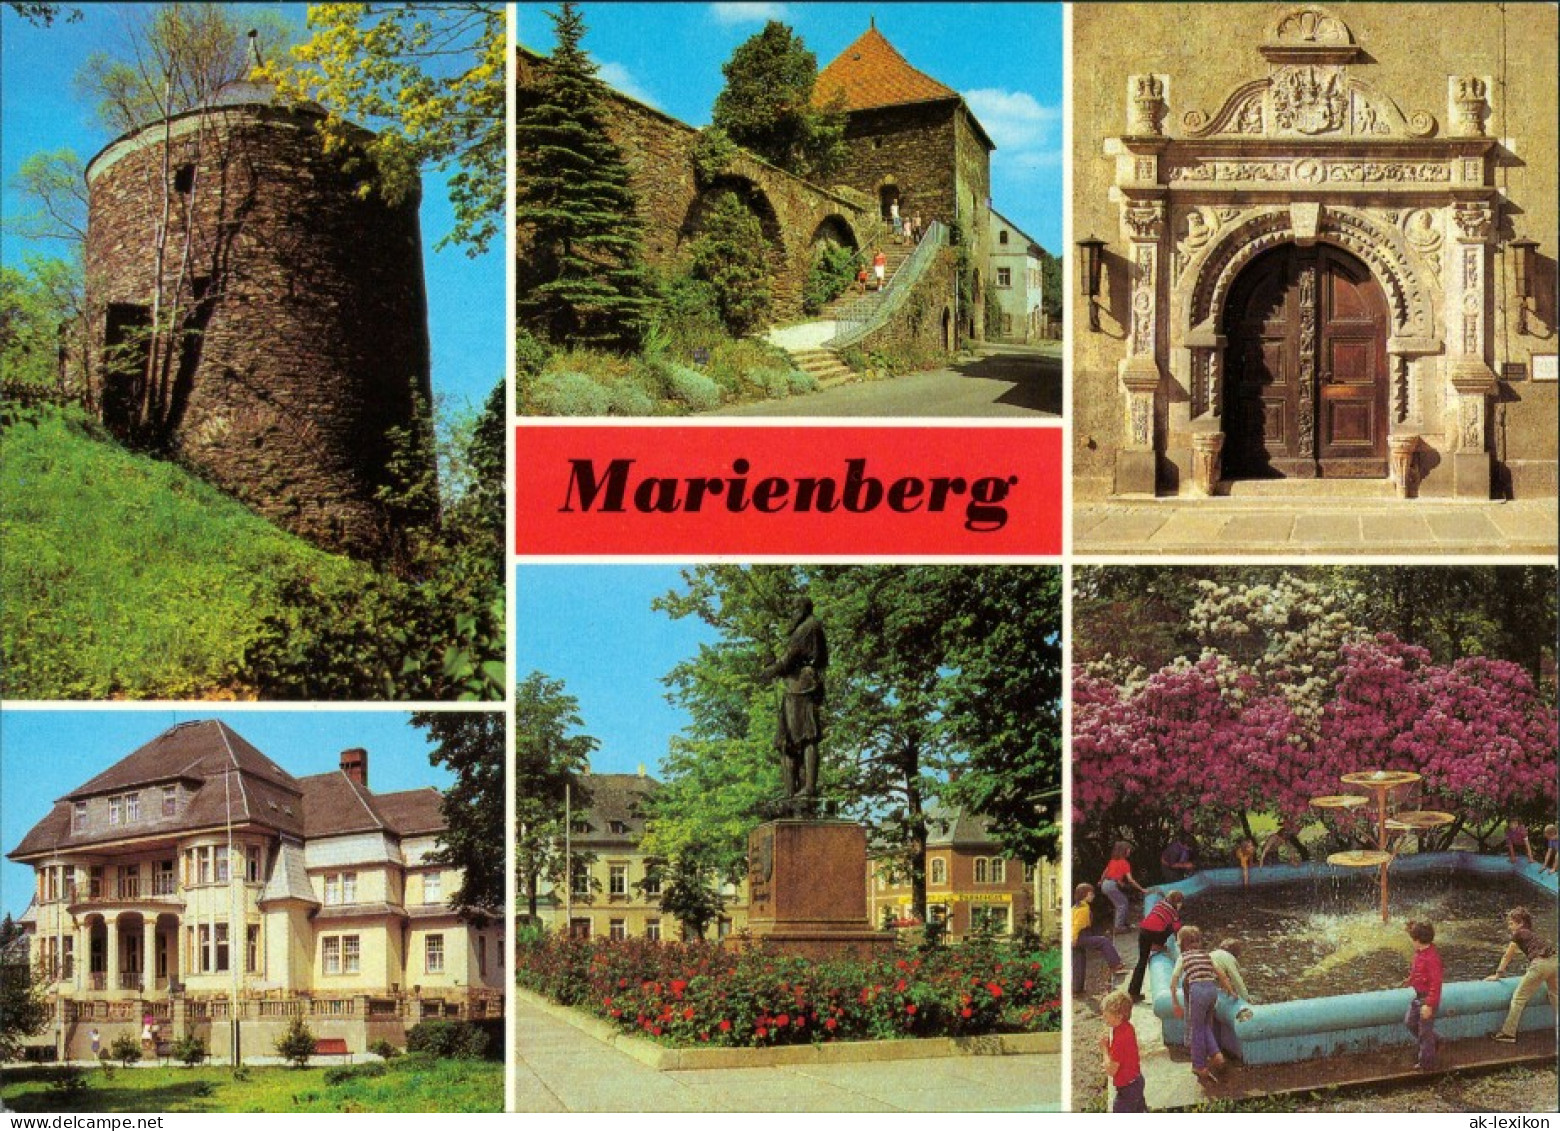 Marienberg Im Erzgebirge Renaissanceportal Des Rathauses, Pionierhaus 1980/1987 - Marienberg